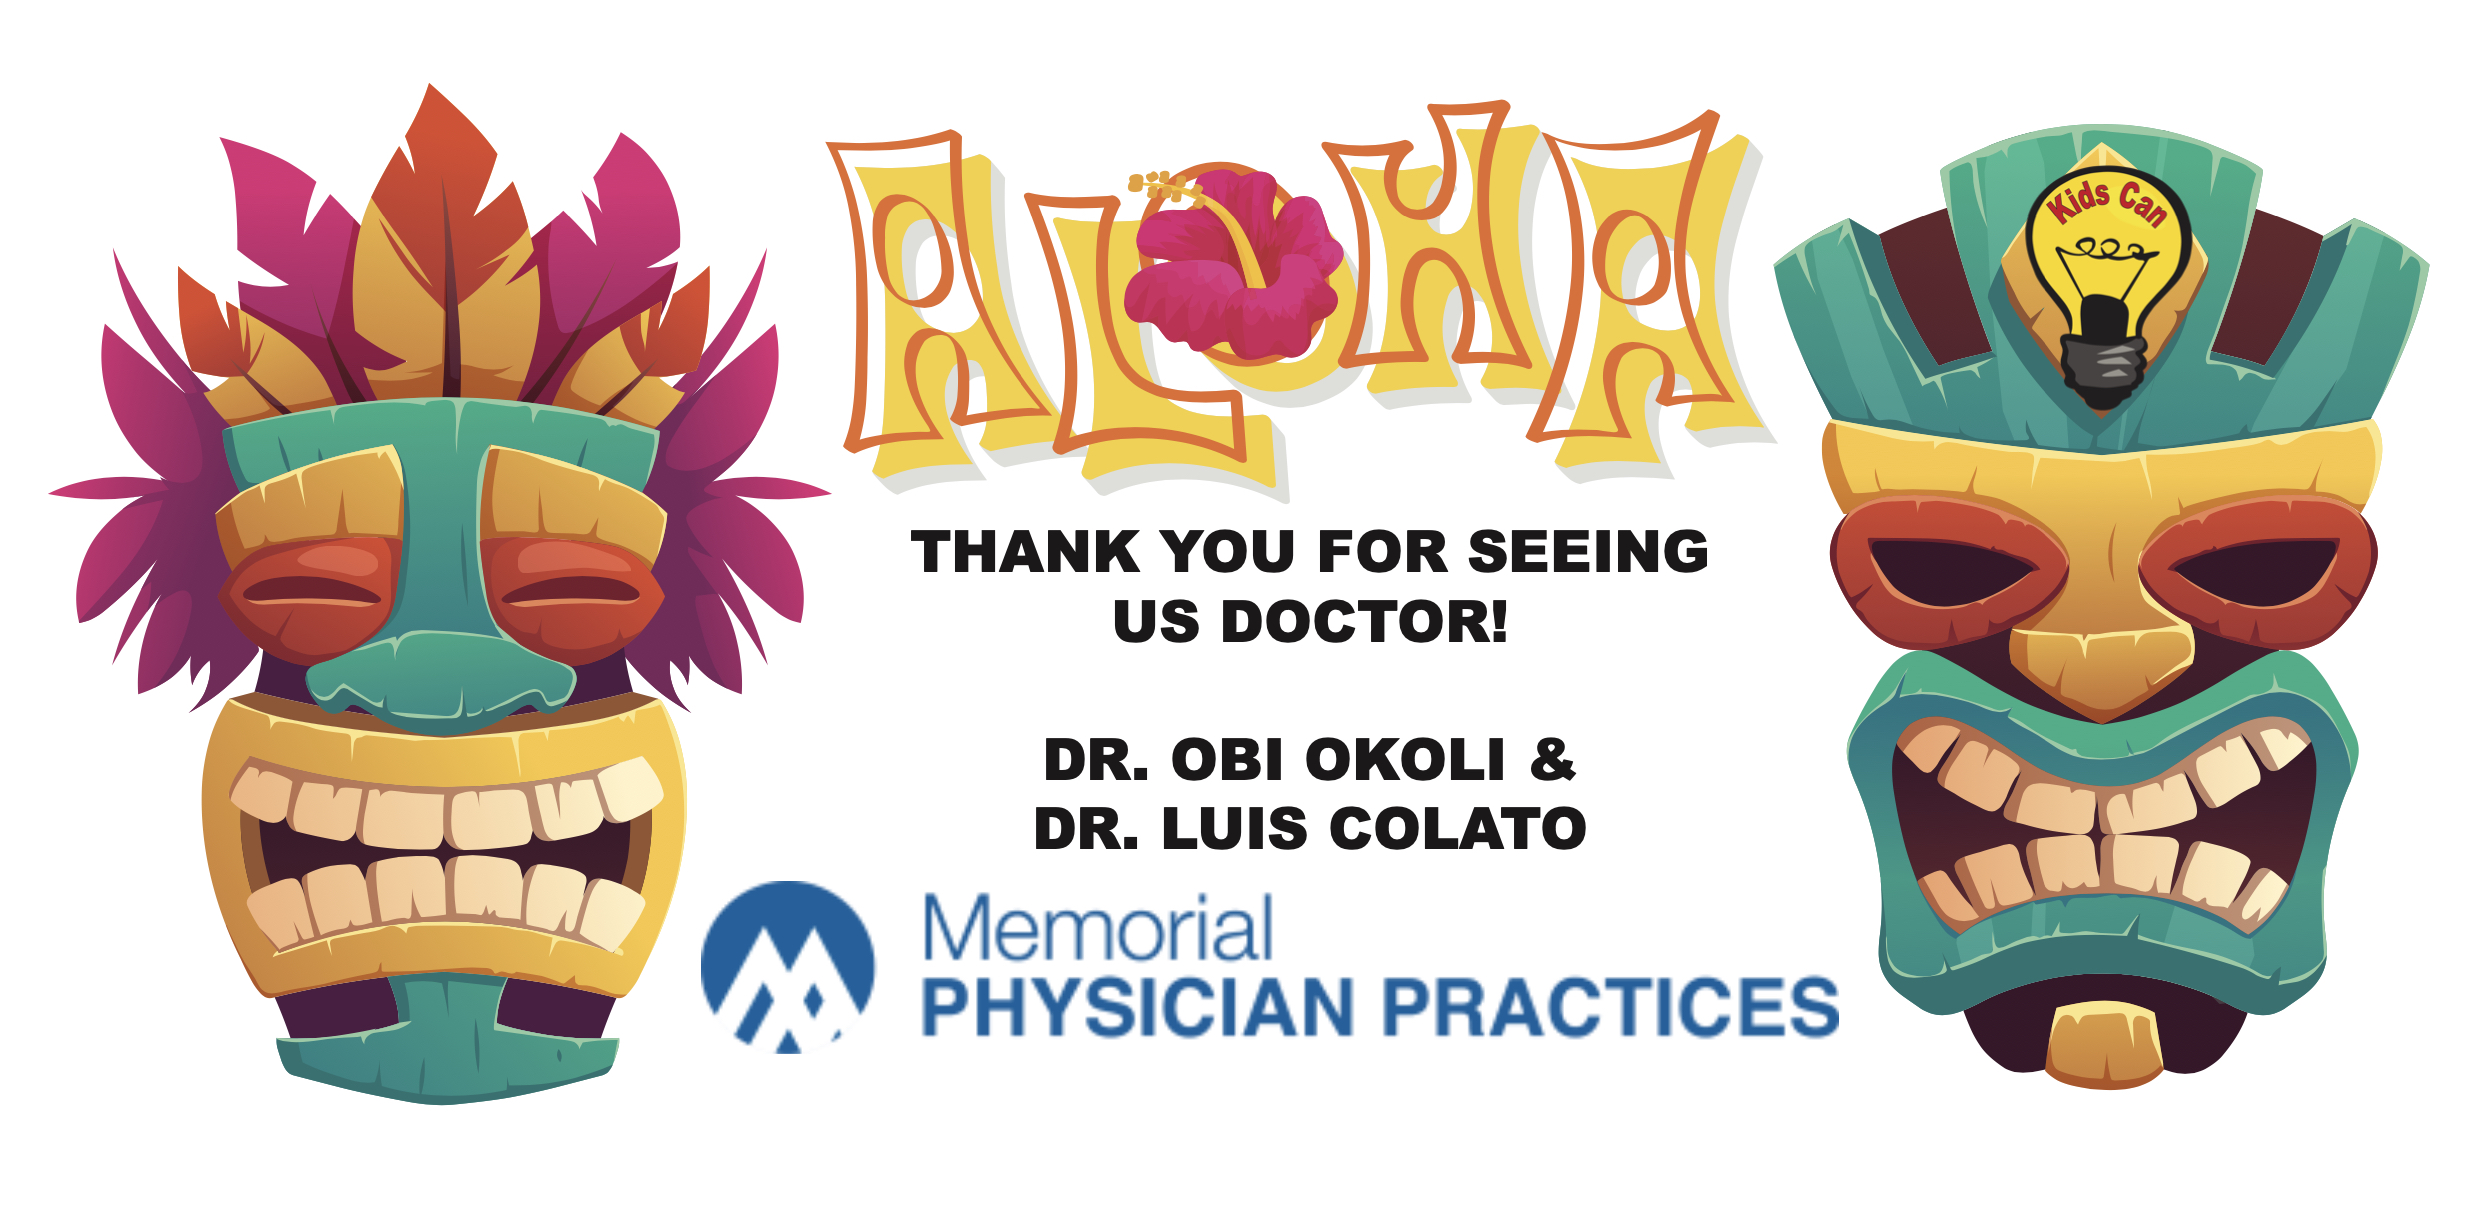 Doctor Okoli